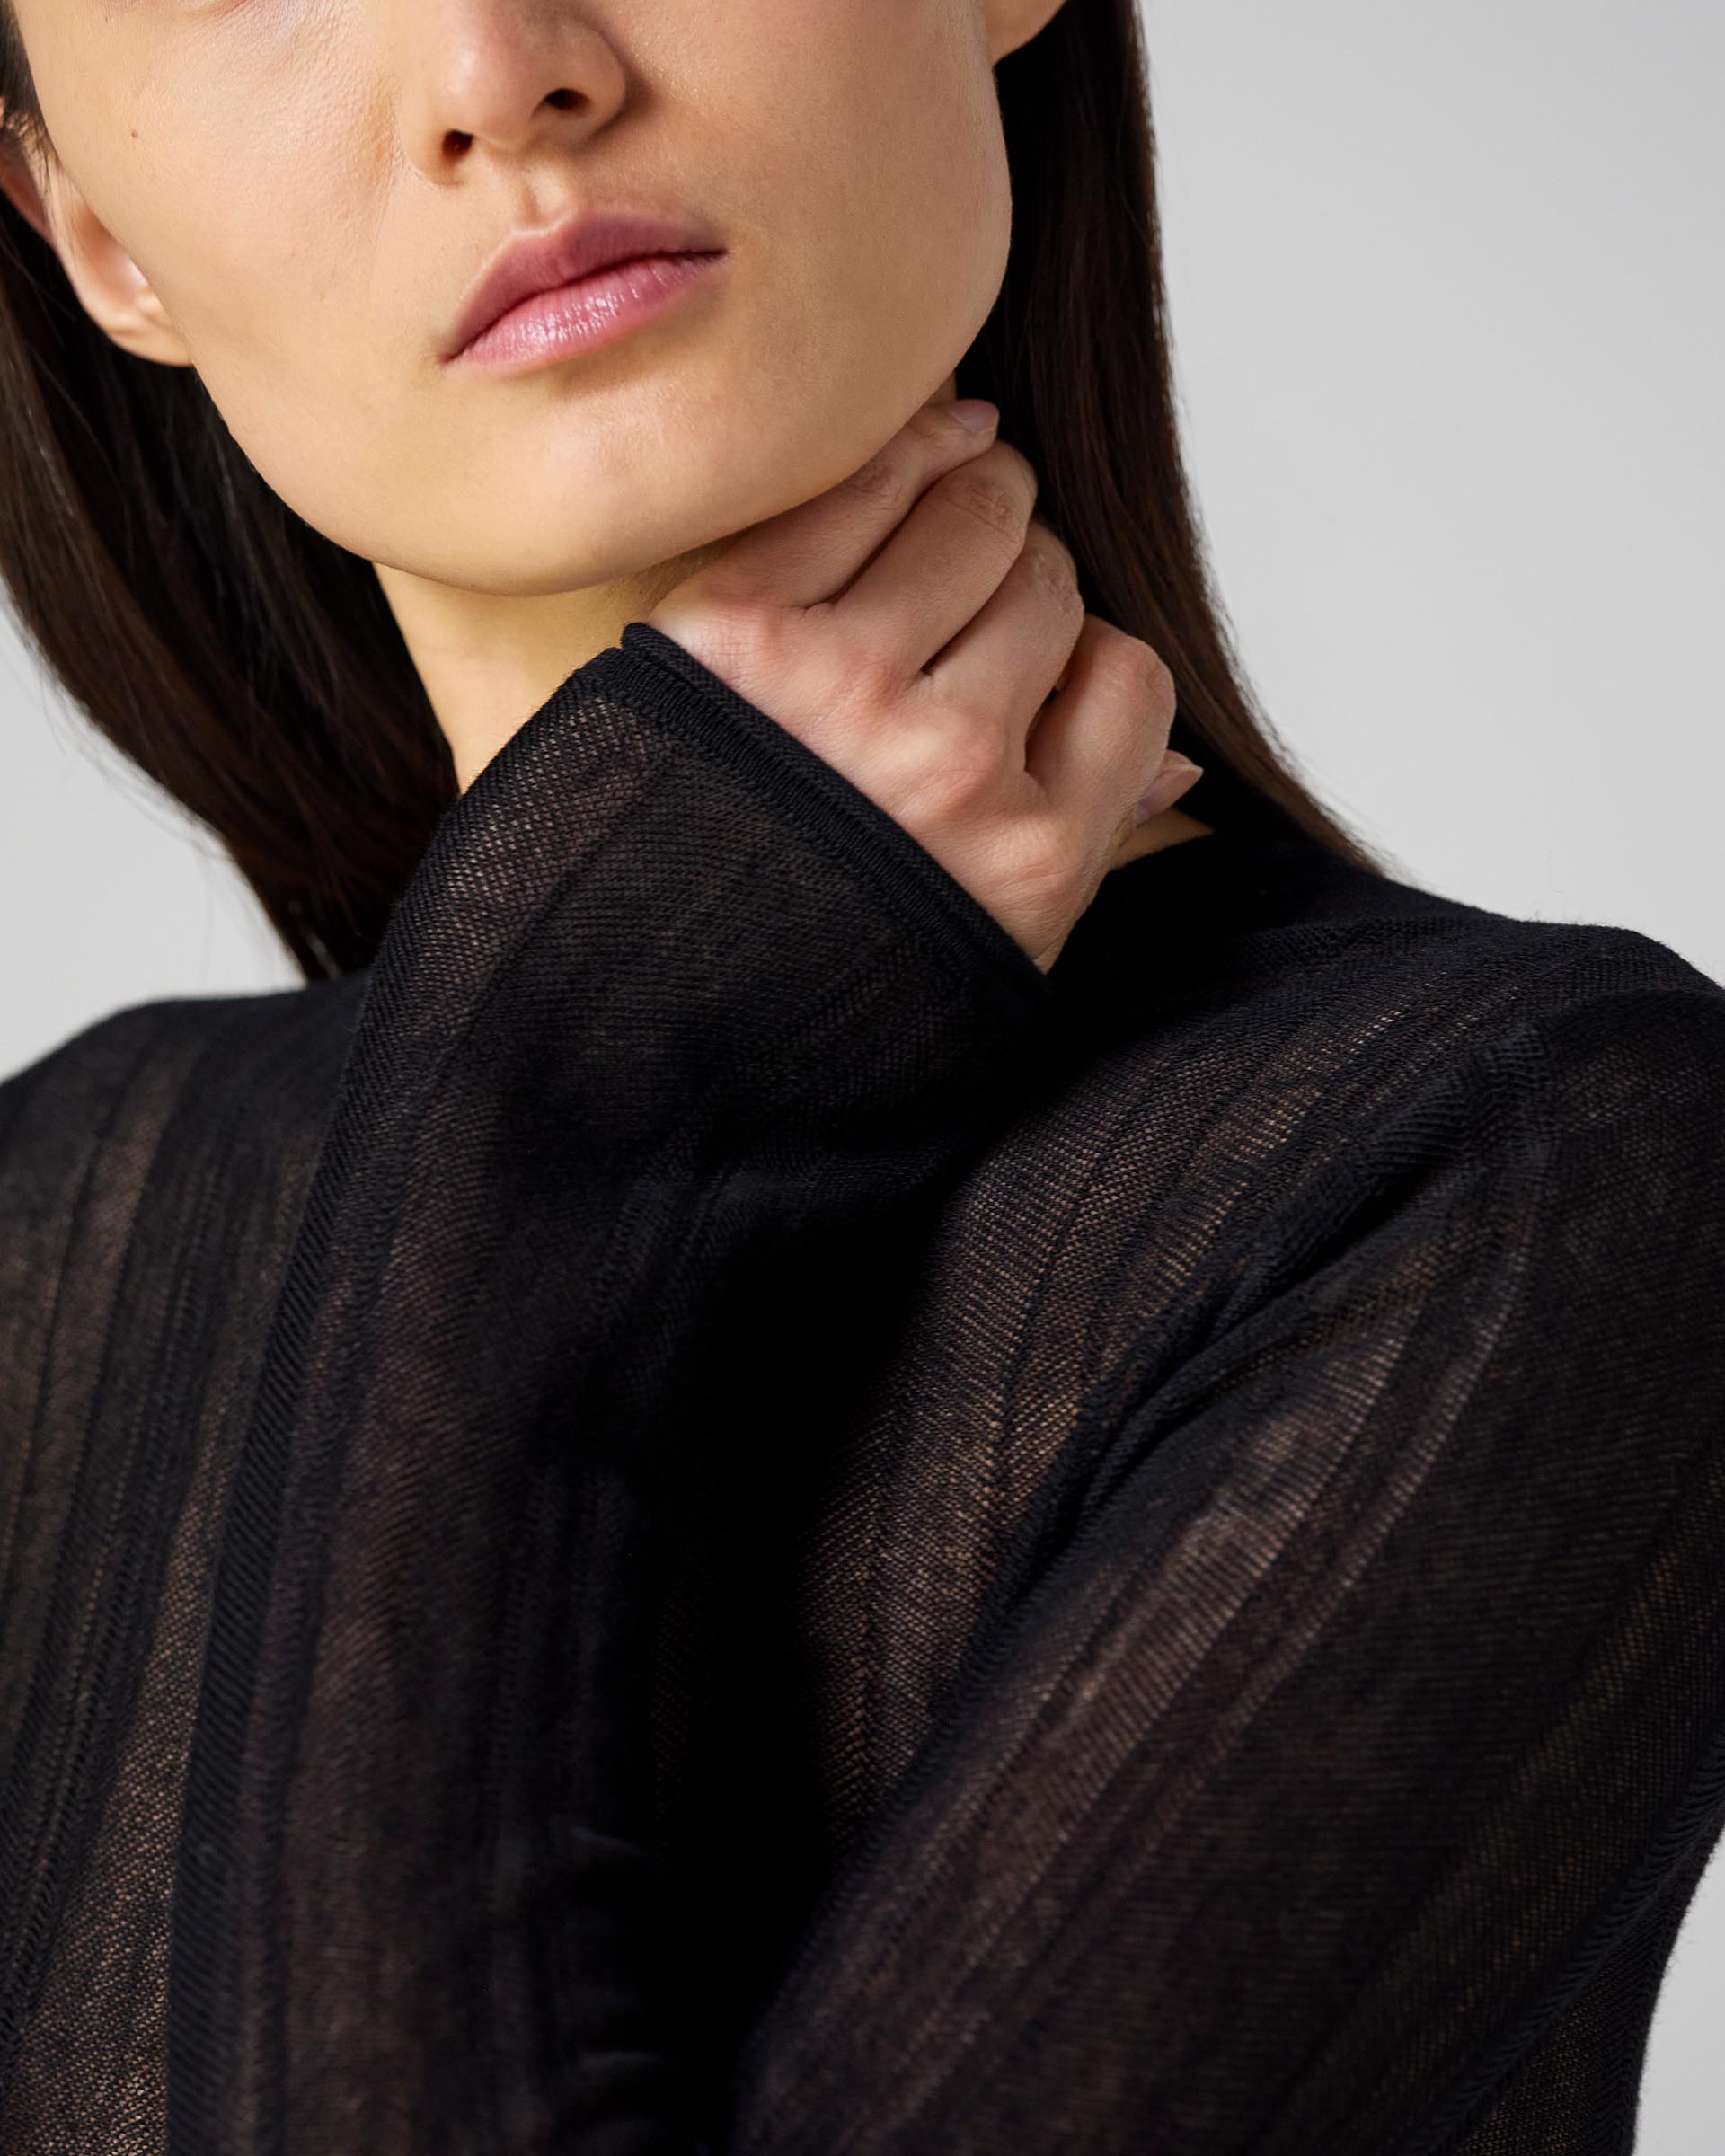 Alise Sweater in Wool, Black